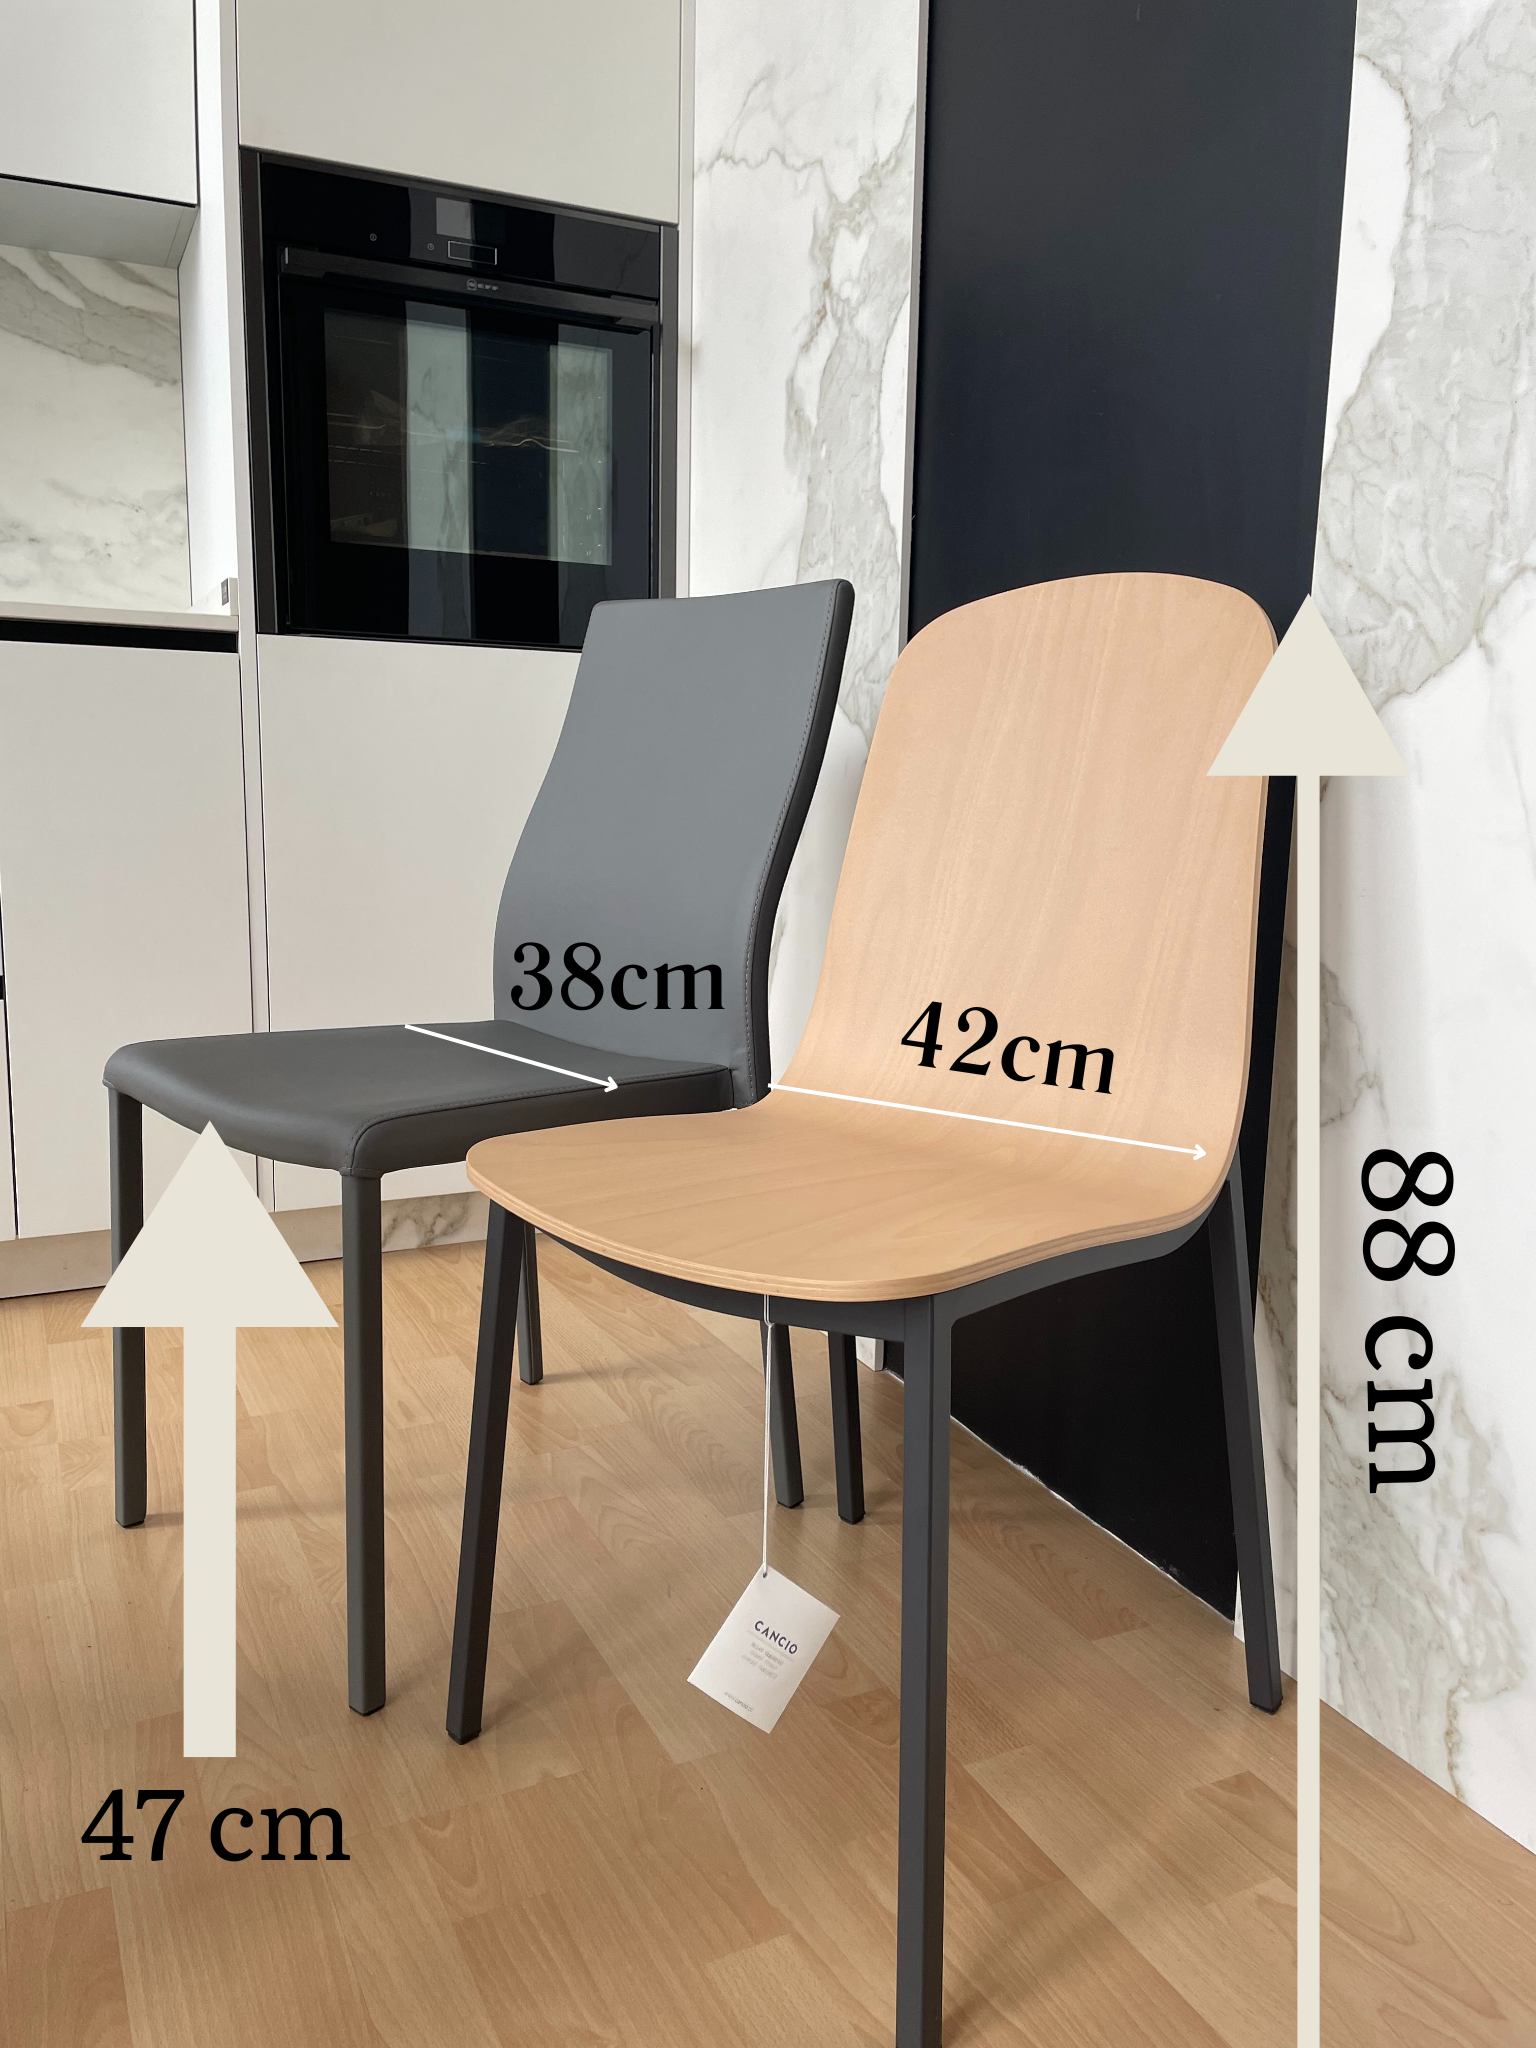 Comparación de las medidas de dos sillas de cocina, una de la marca cancio (más baja) y otra de importación (más alta)